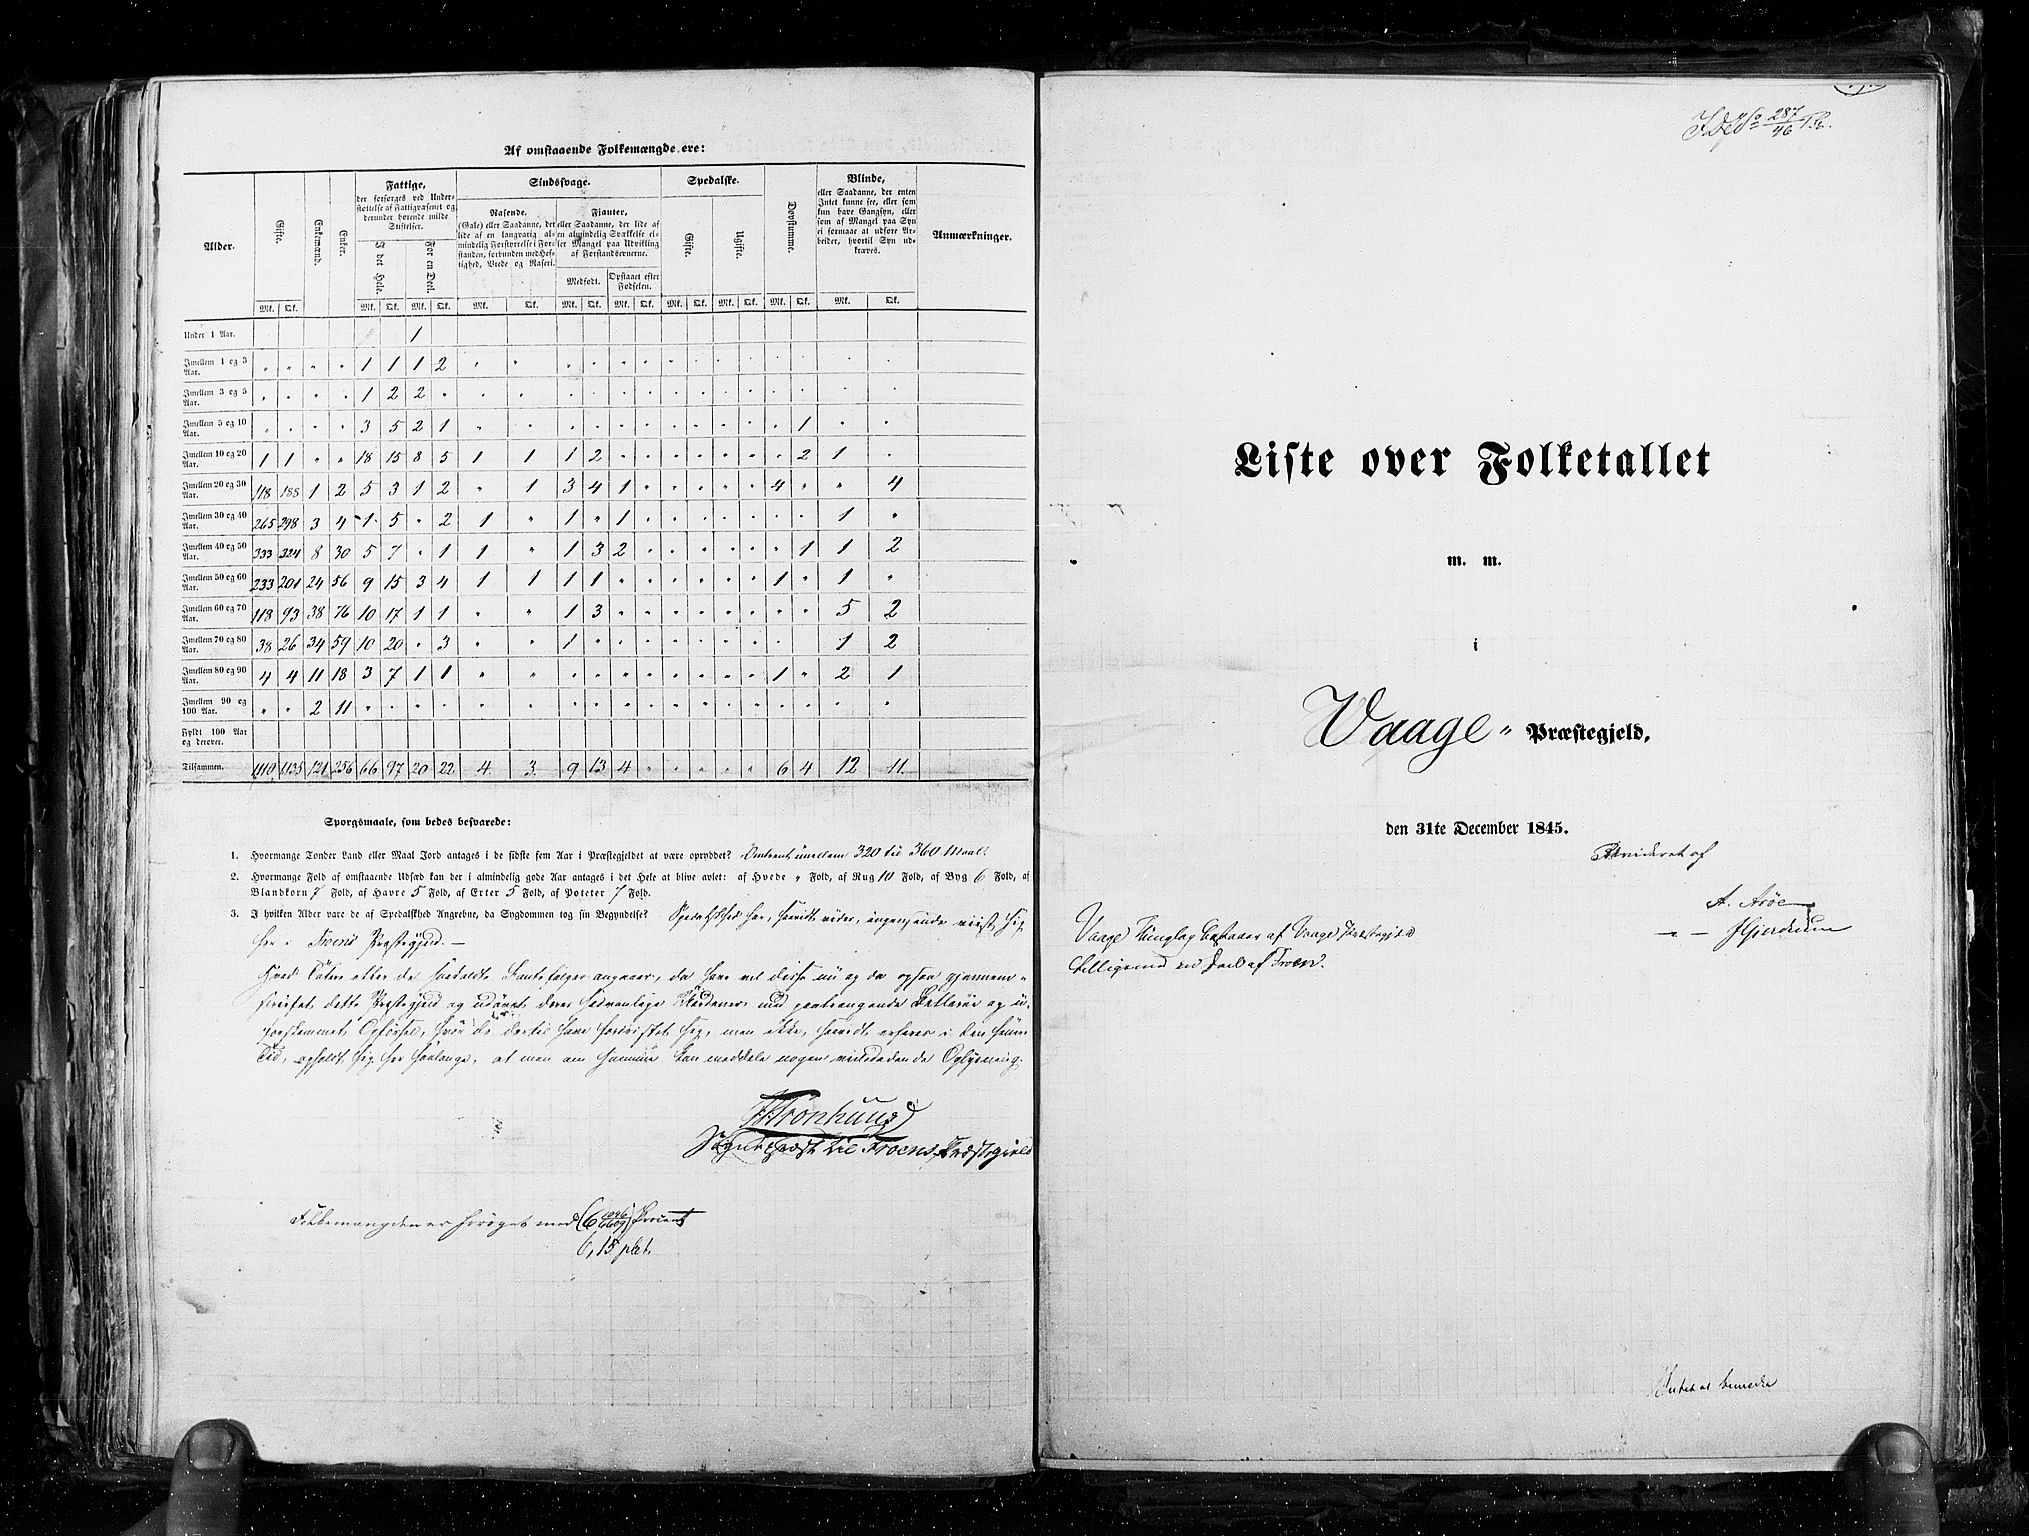 RA, Folketellingen 1845, bind 3: Hedemarken amt og Kristians amt, 1845, s. 392